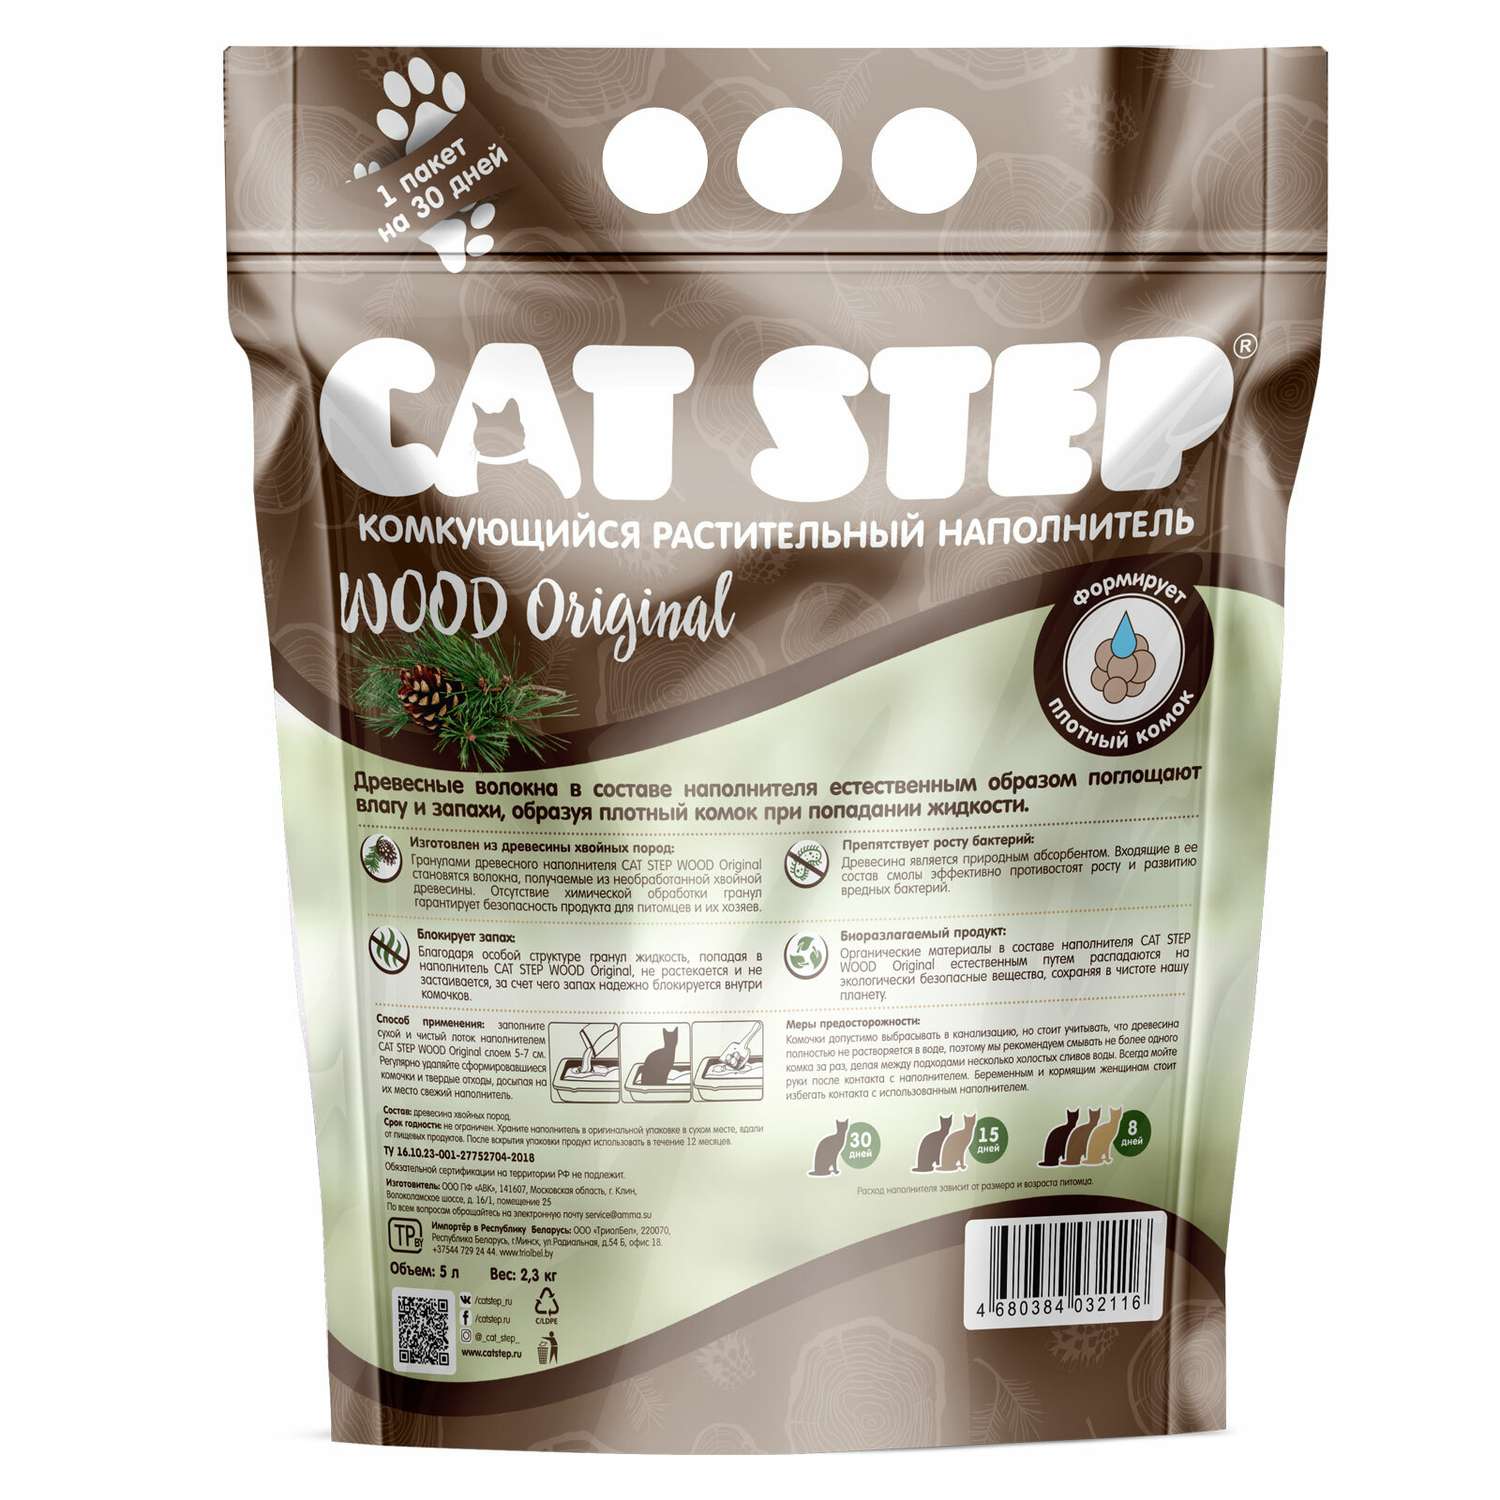 Наполнитель для кошек Cat Step Wood Original комкующийся растительный 5л - фото 2